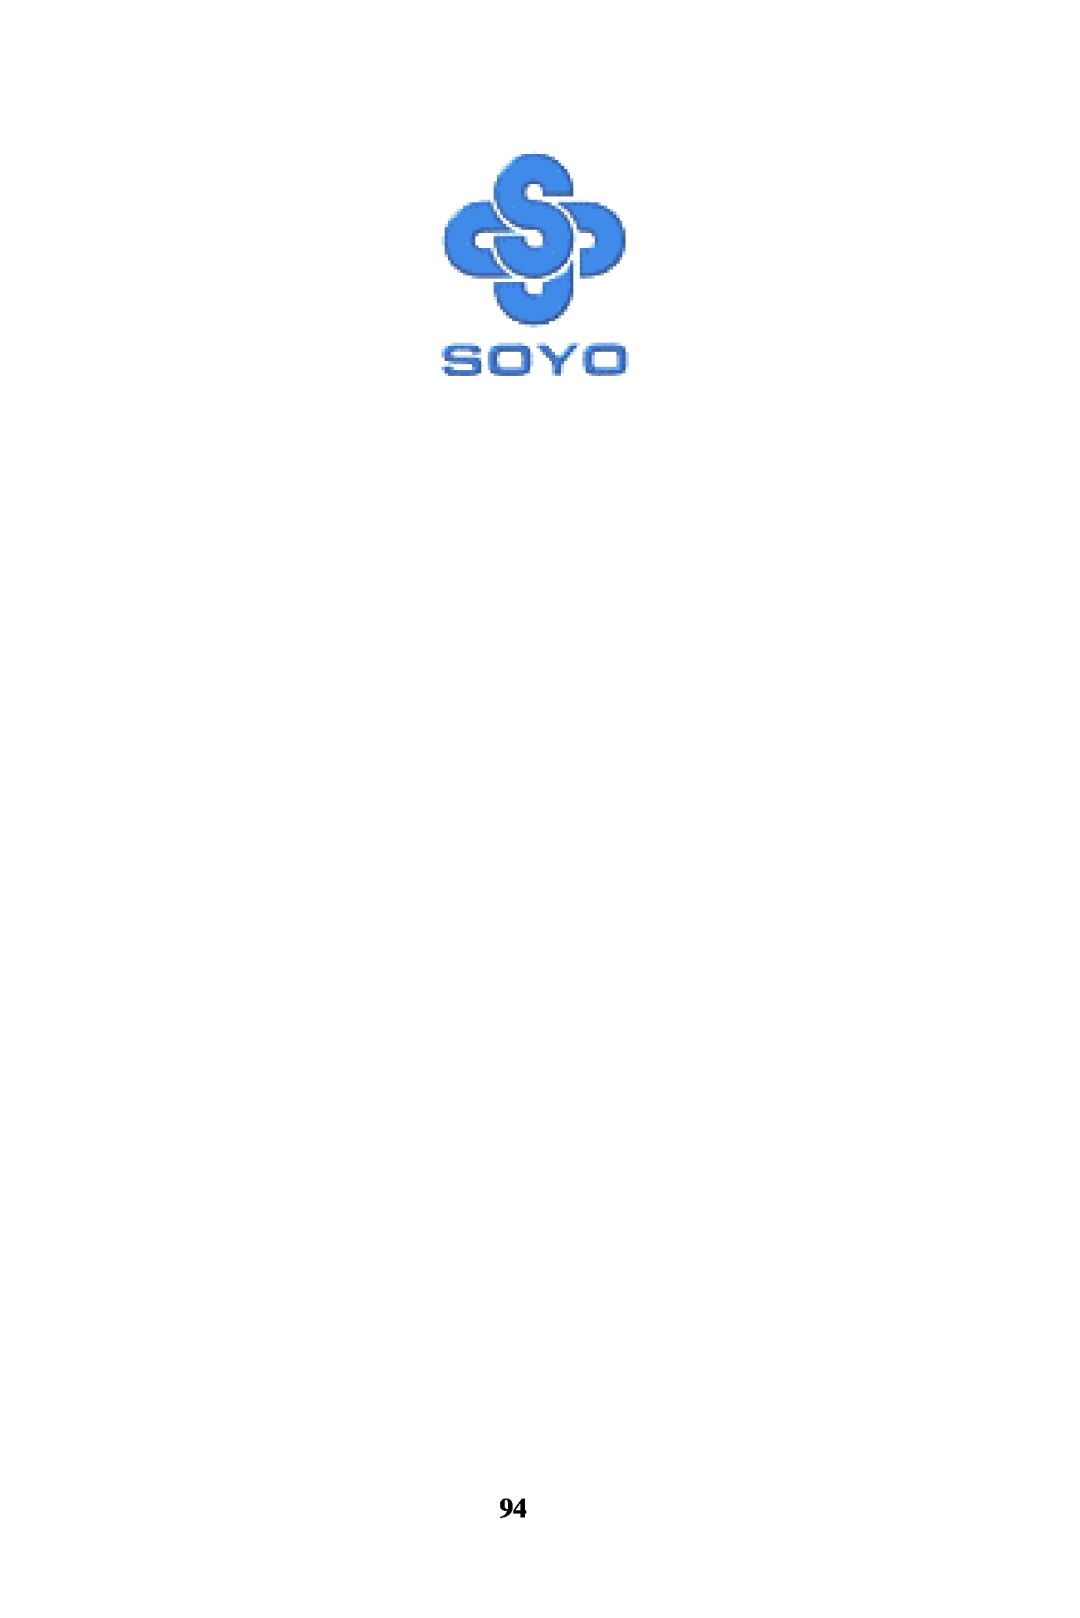 SOYO SY-K7VTA PRO user manual 